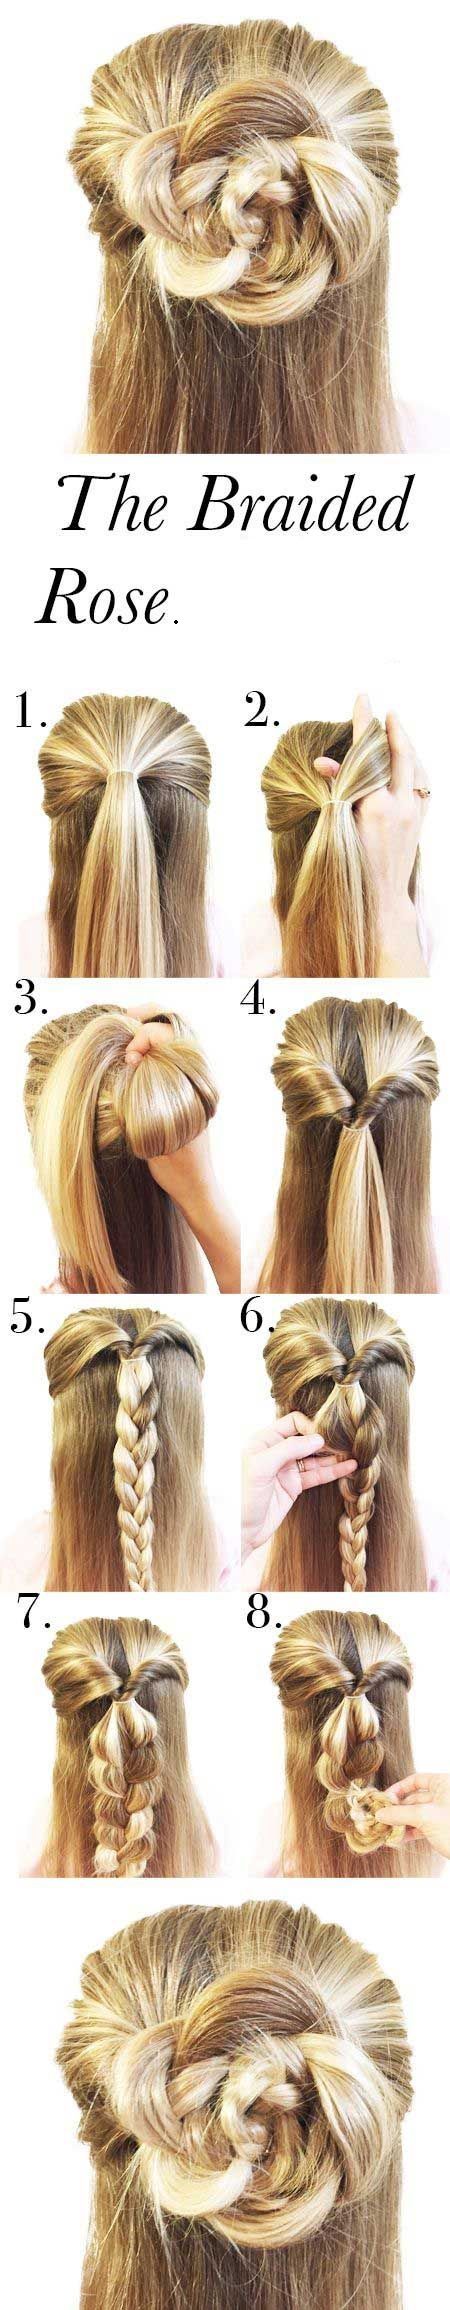 braided-hairstyles-braid-flower-rose-romantic-hairstyle.jpg